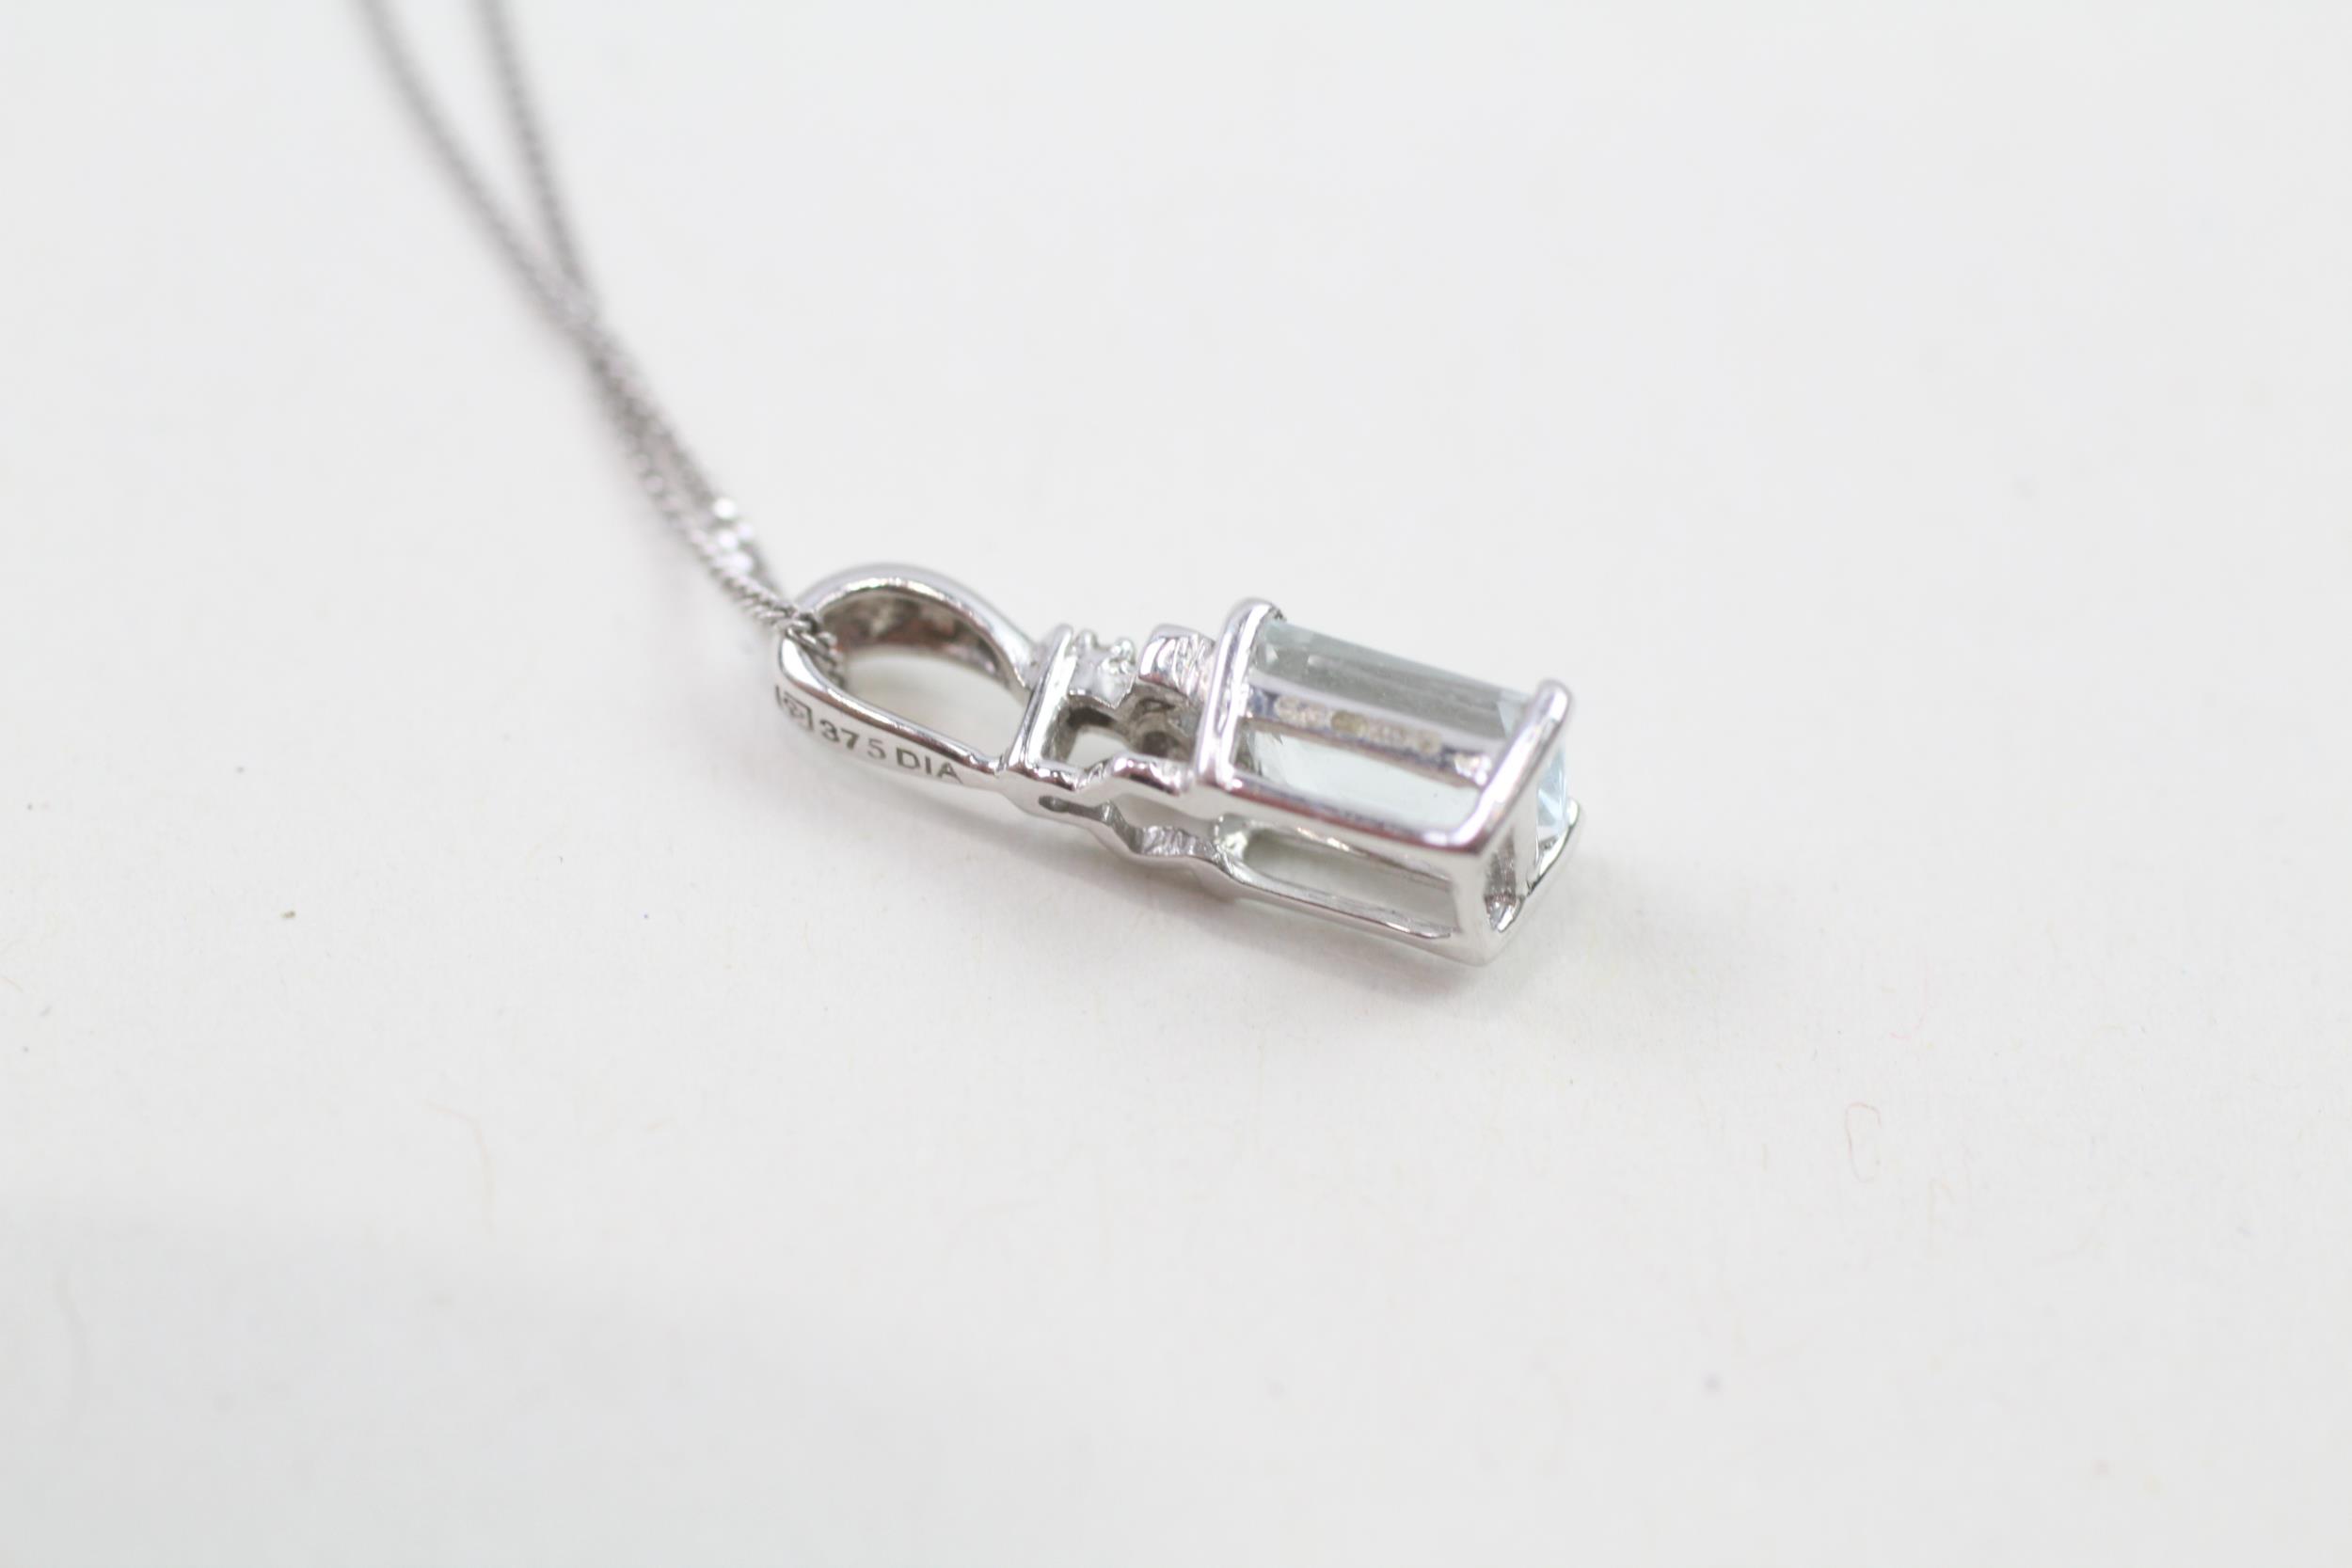 9ct white gold diamond & aquamarine pendant necklace (1.7g) - Image 3 of 4